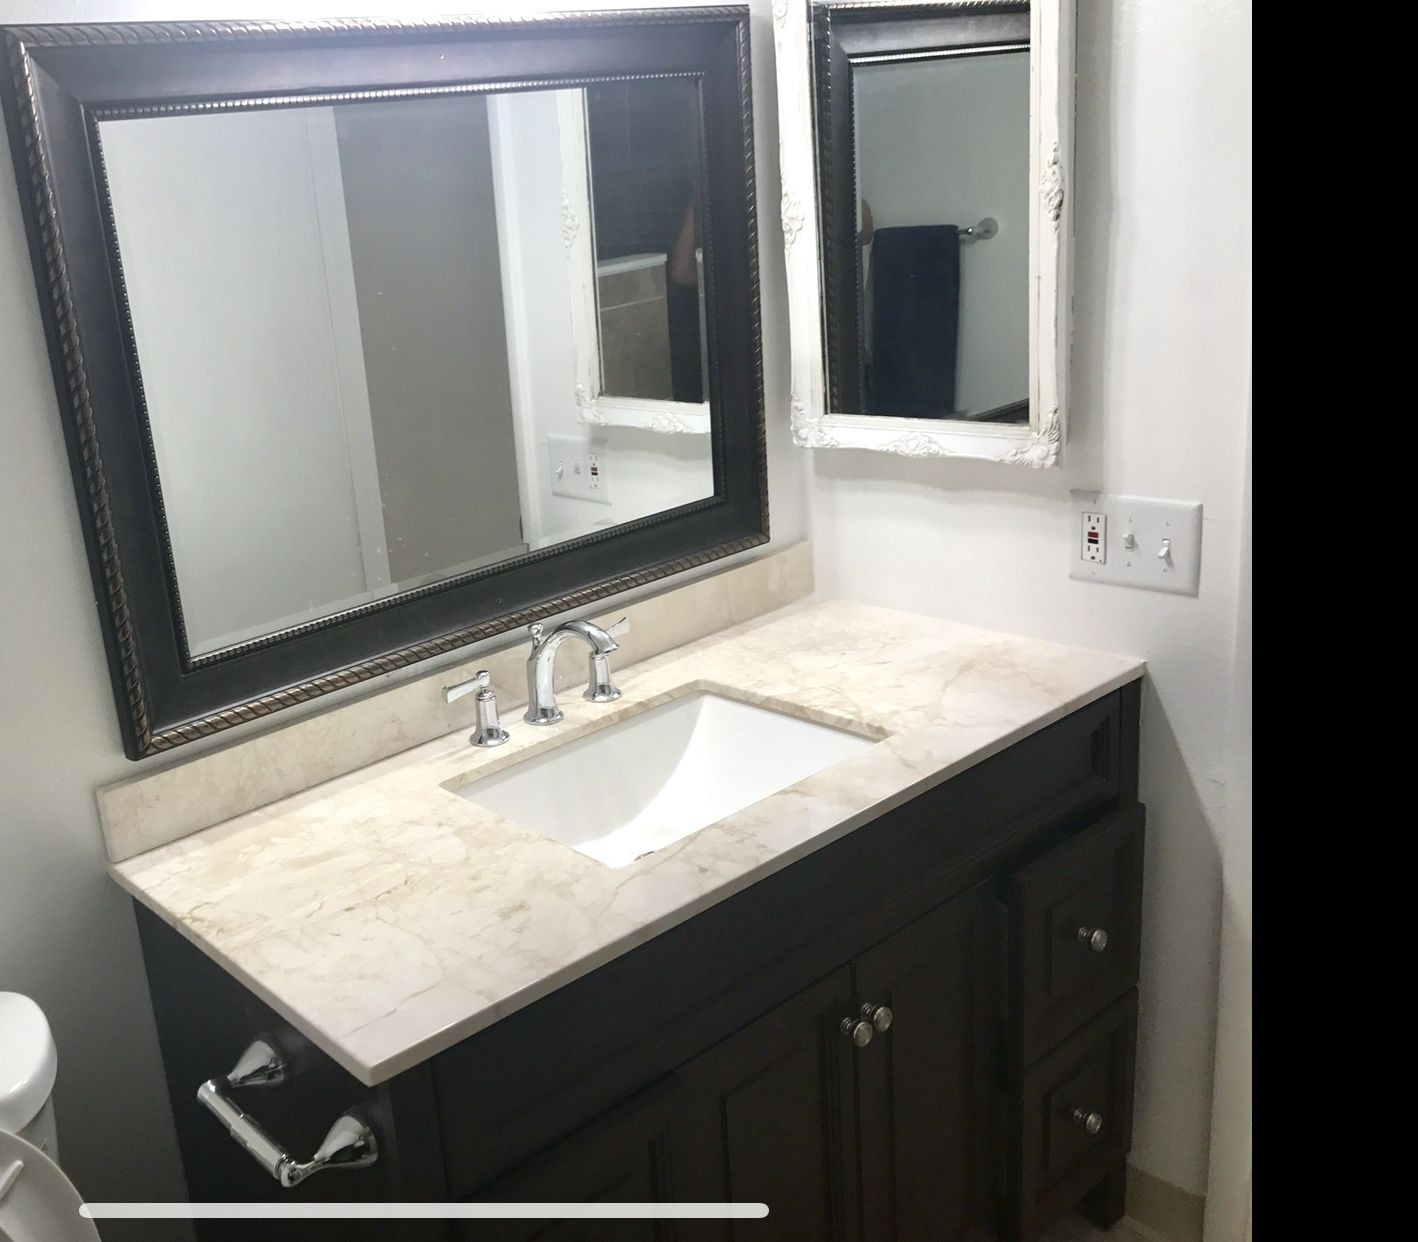 Bathroom Vanity Sink For In Las, Bathroom Vanities Las Vegas Nevada